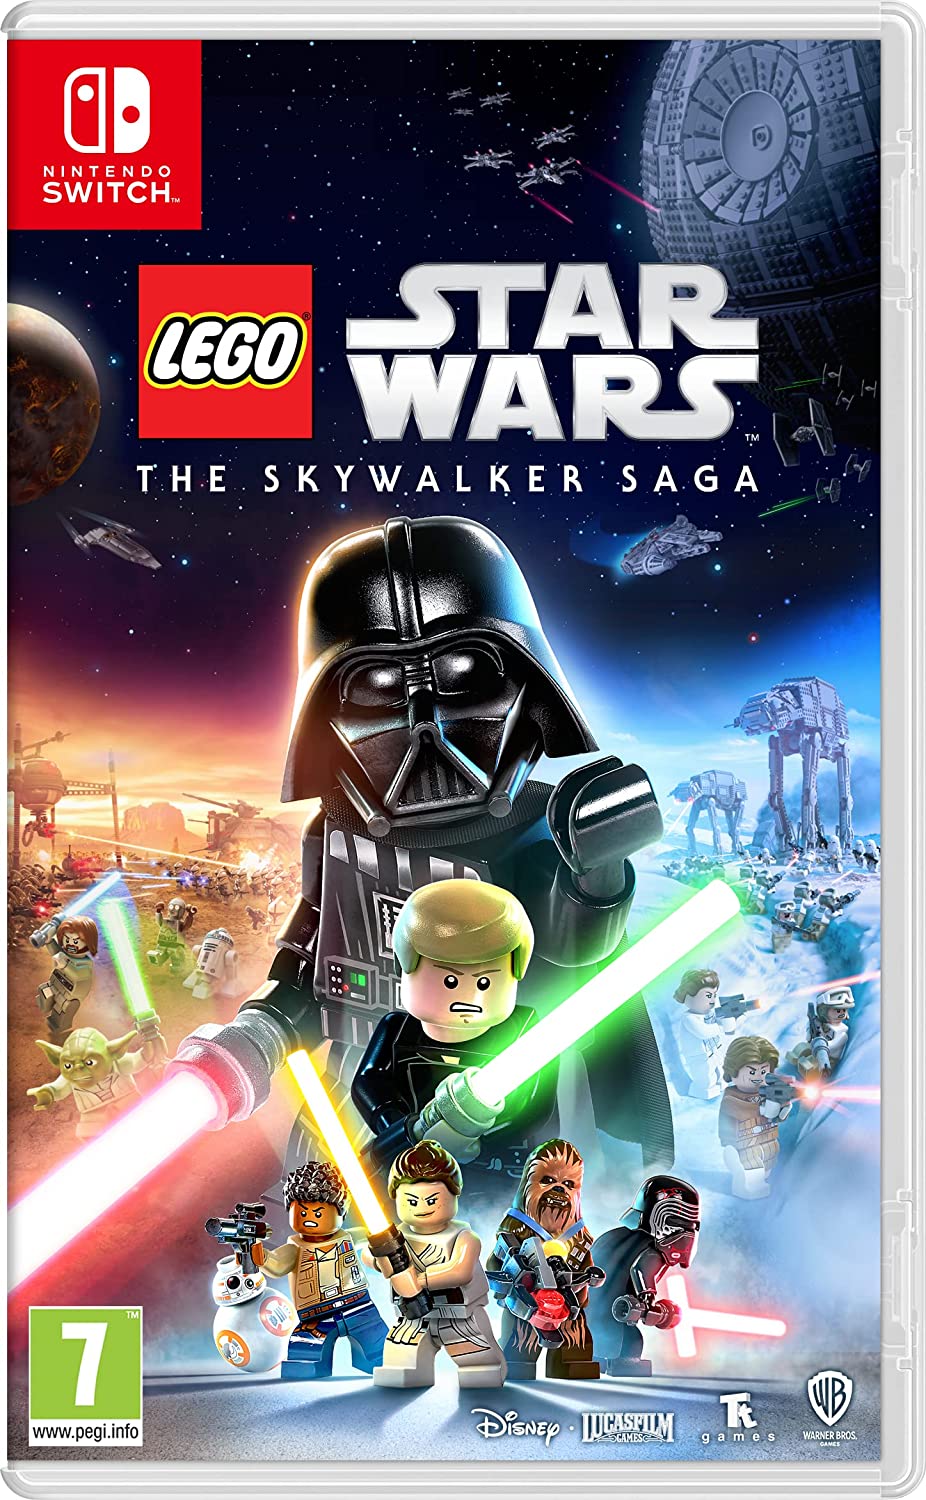 Lego Star Wars: The Skywalker Saga slashed by over half price